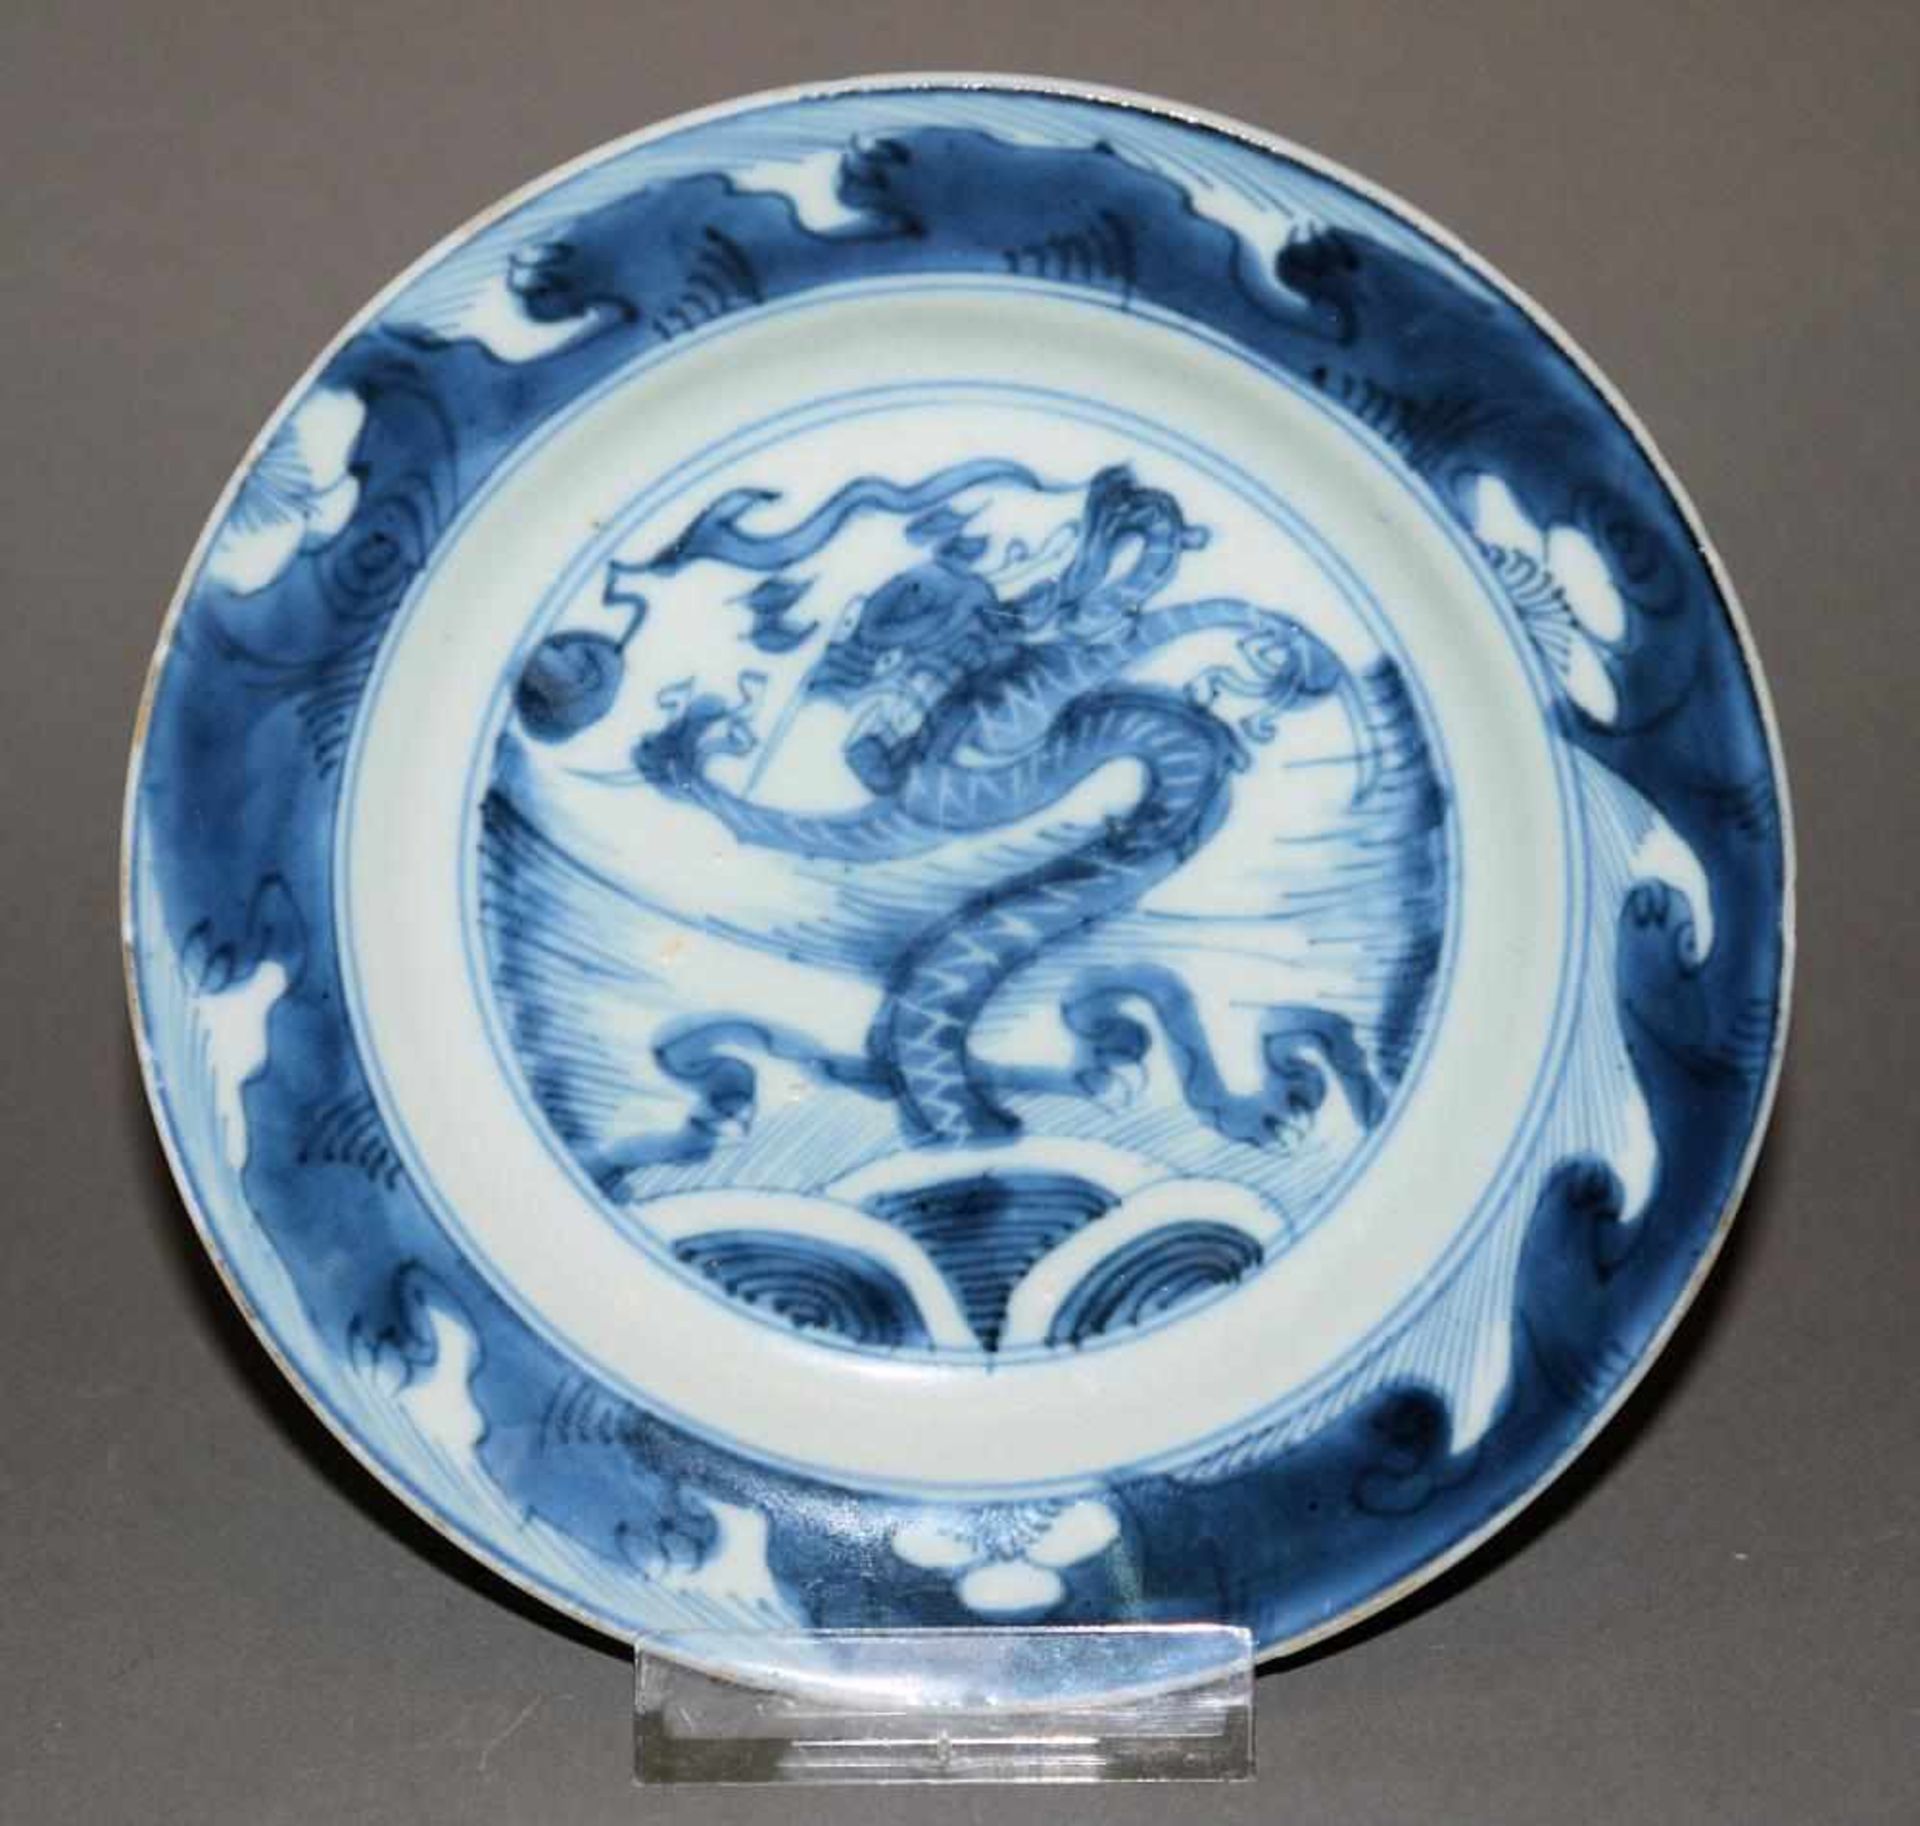 Blauweiß-Drachenteller der Kangxi- Zeit, China um 1700 Export-Porzellanteller mit einem wütenden,